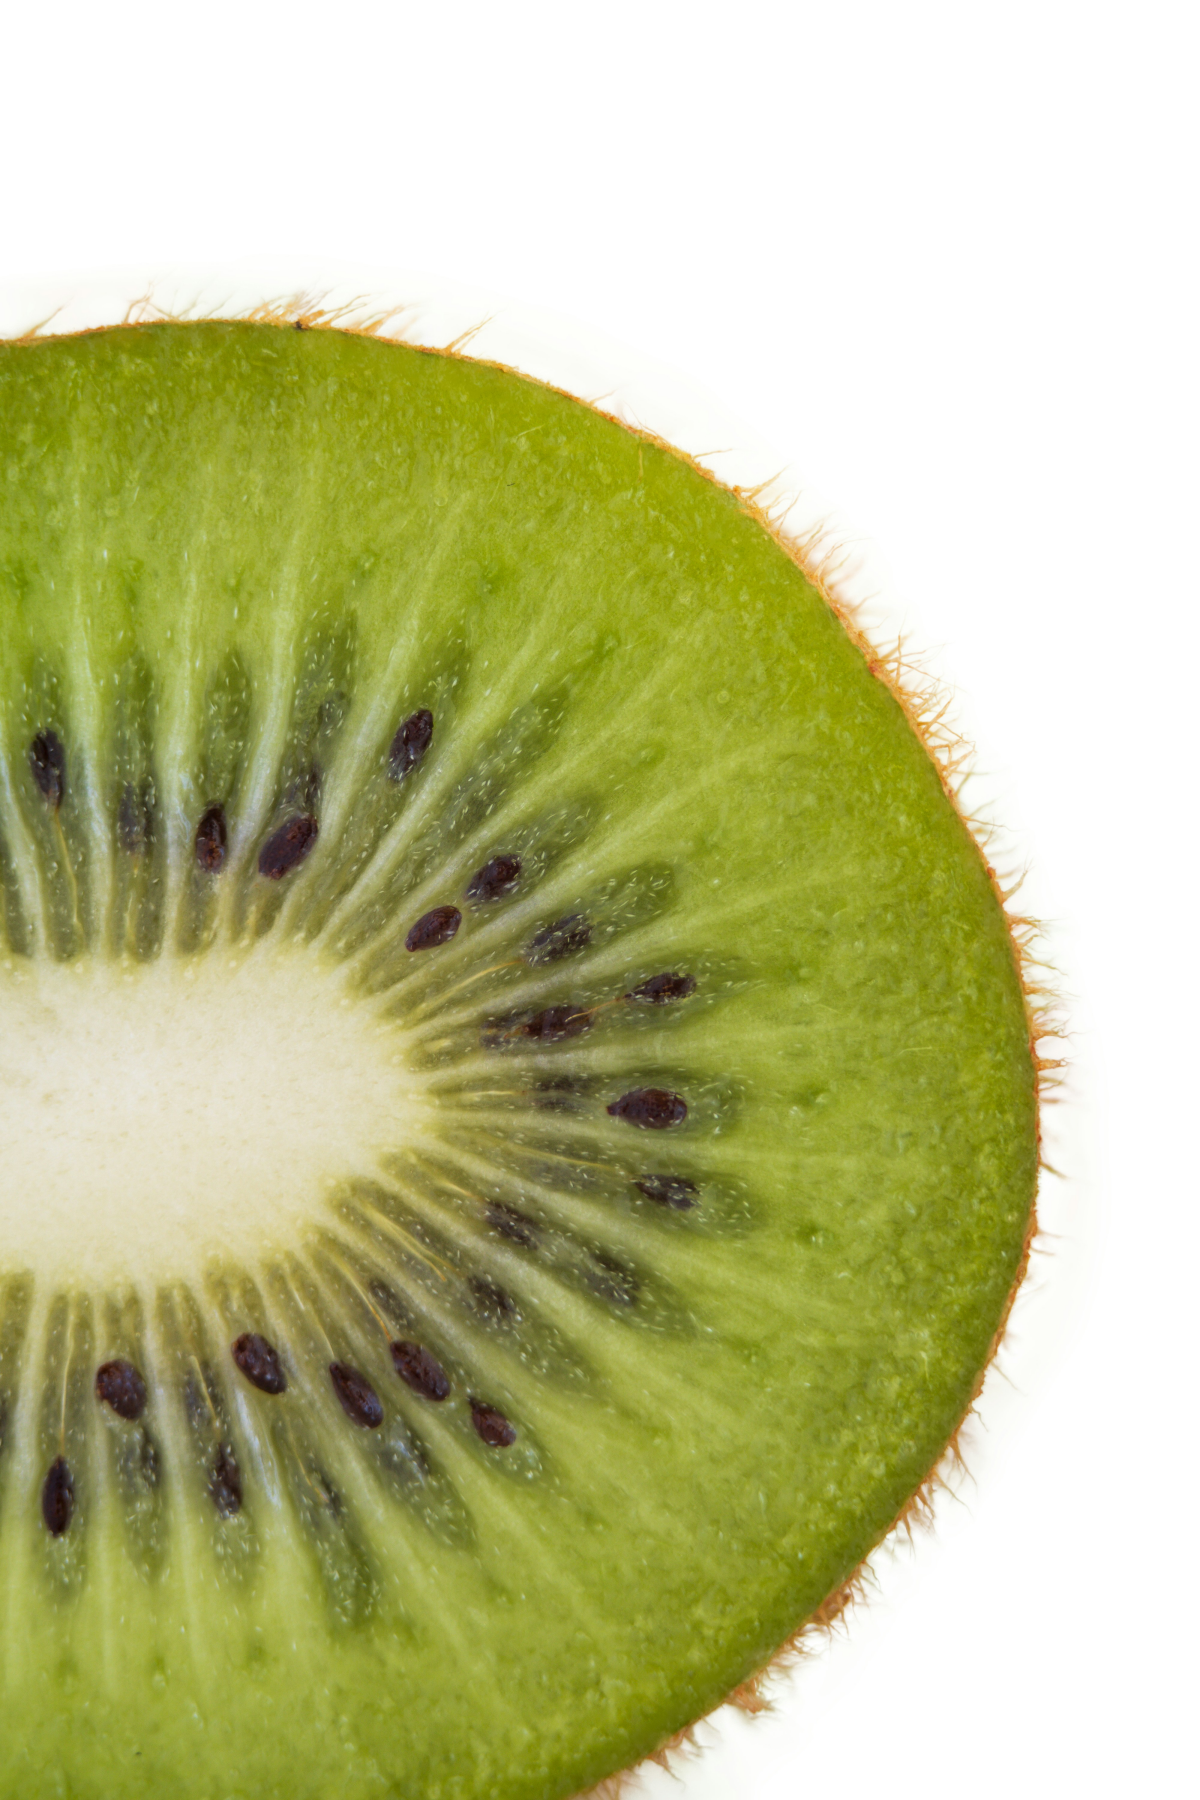 green fruit kiwi up close